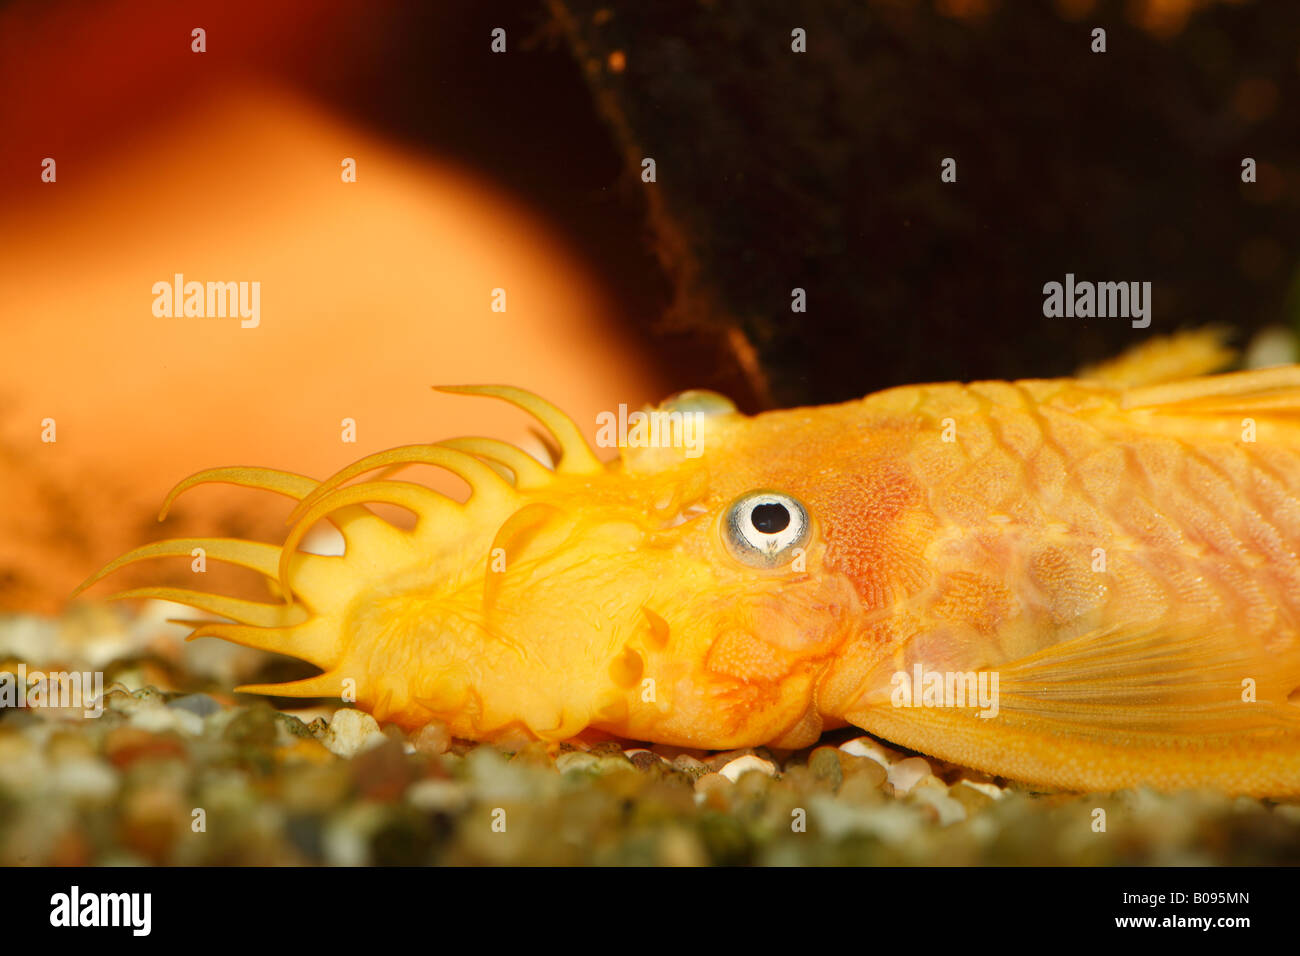 Pleco, Ancistrus jaune (Ancistrus sp. Ttemminickii) L 144, homme, de l'eau chaude, l'aquarium d'eau douce Banque D'Images